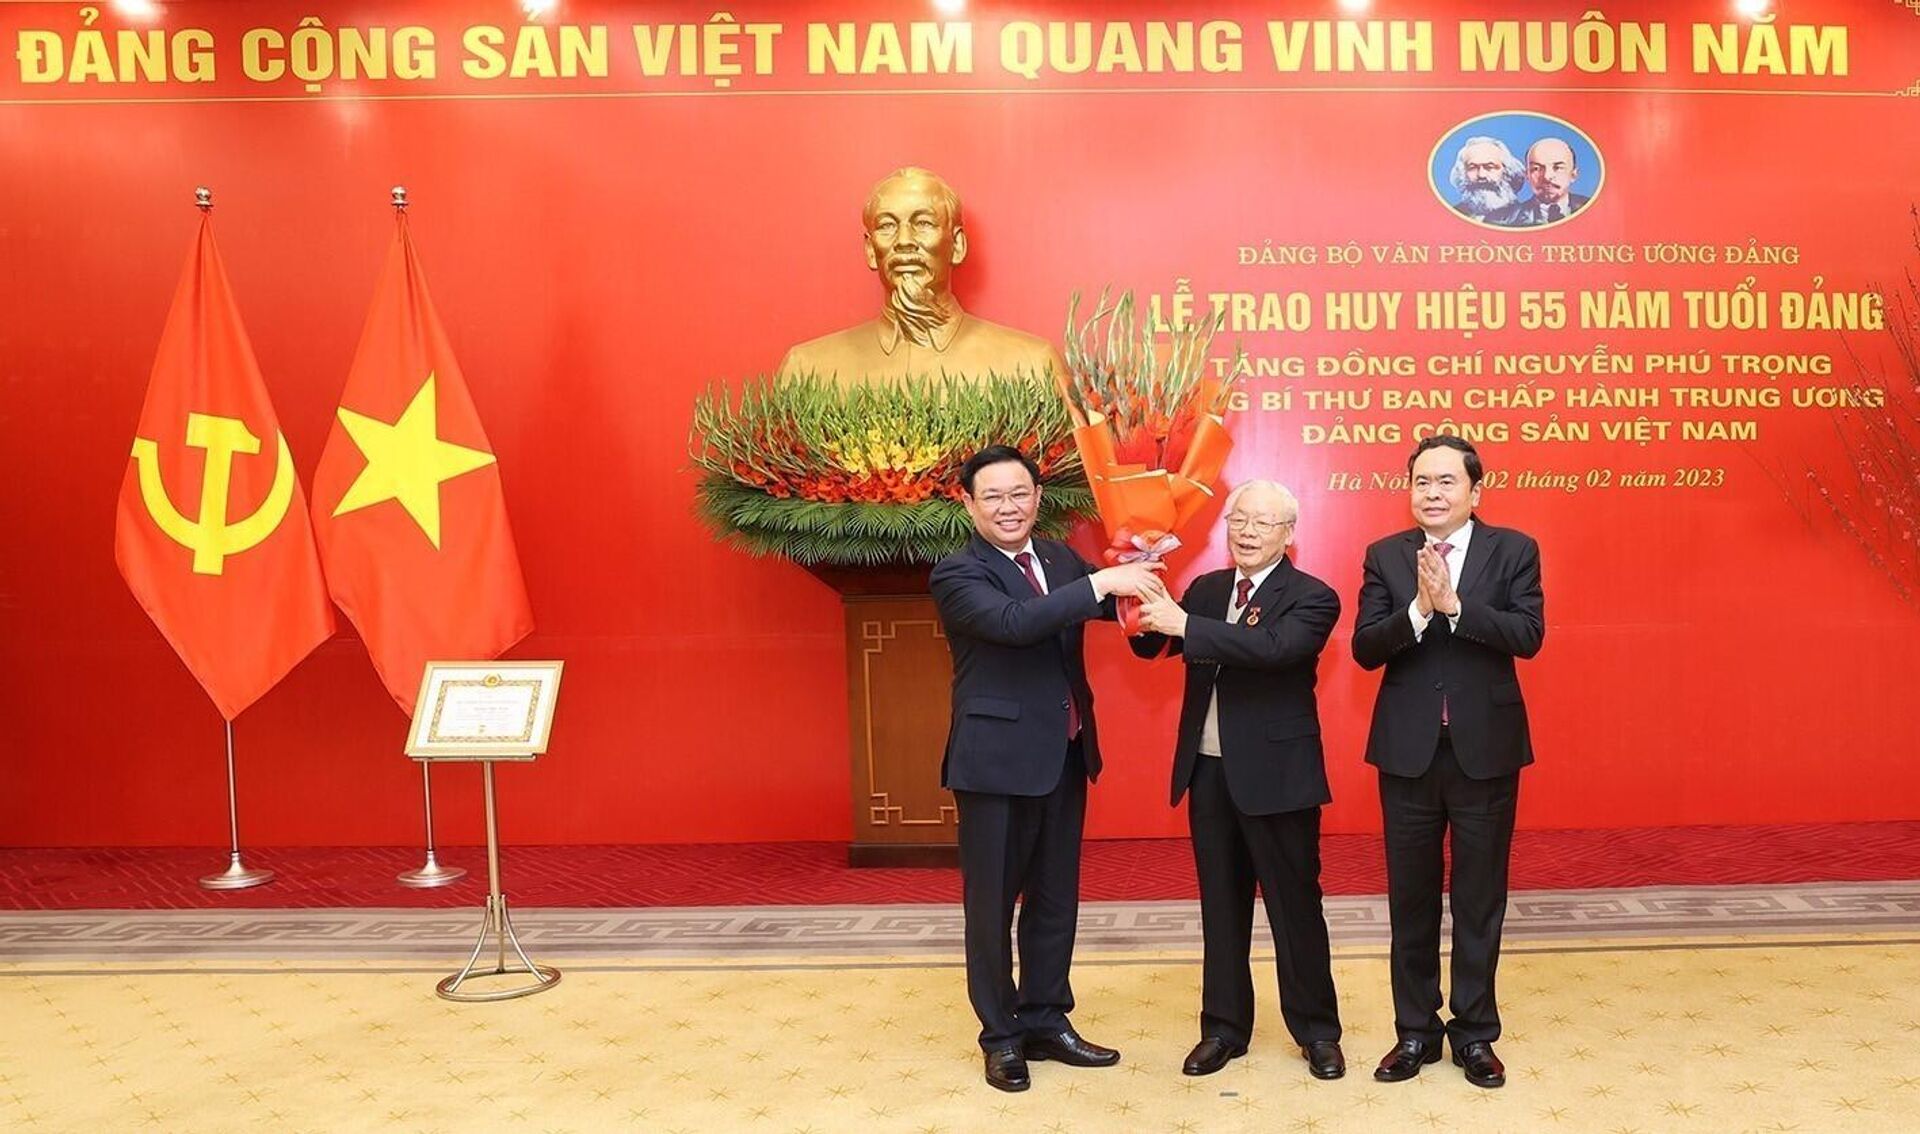 Tổng Bí thư Nguyễn Phú Trọng nhận Huy hiệu 55 năm tuổi Đảng - Sputnik Việt Nam, 1920, 02.02.2023